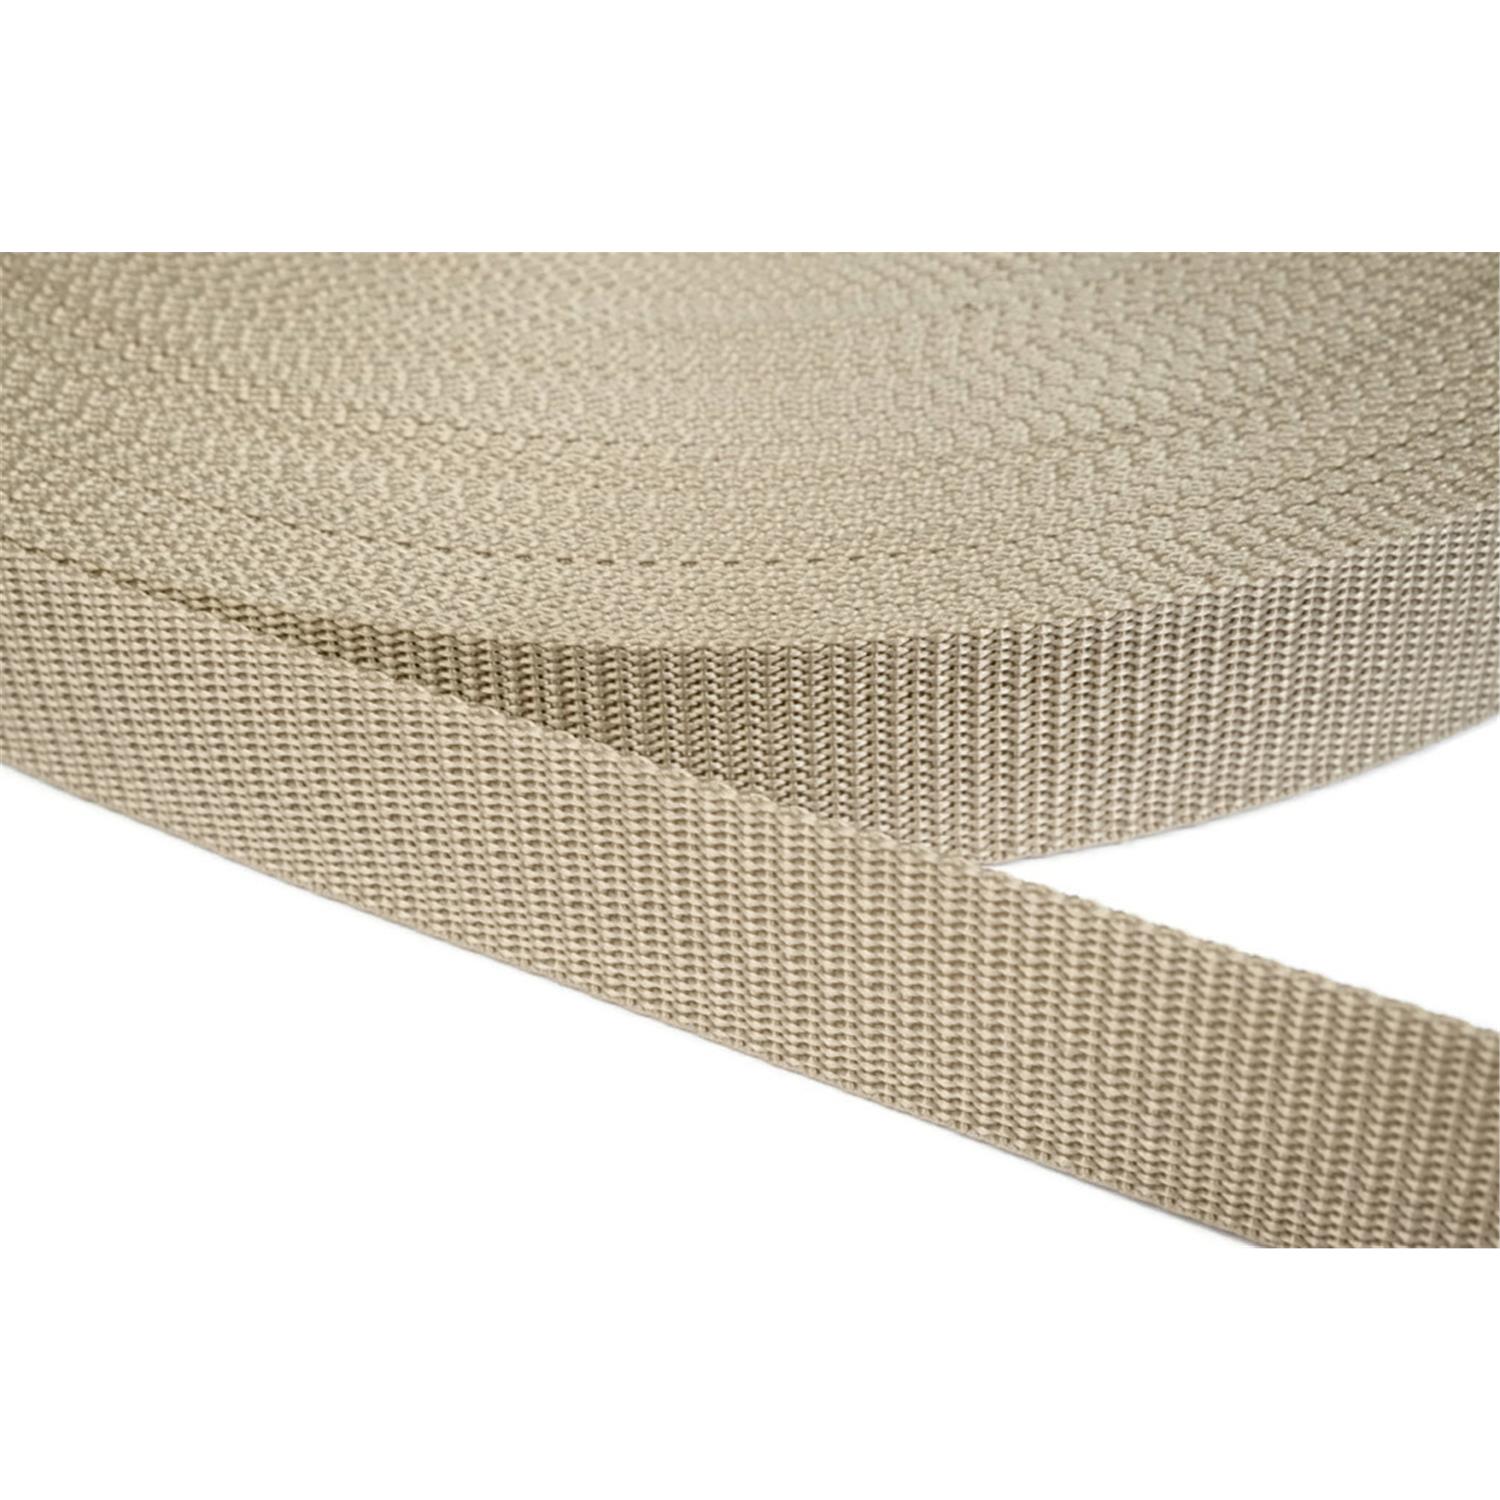 Gurtband 50mm breit aus Polypropylen in 41 Farben 03 - beige 12 Meter